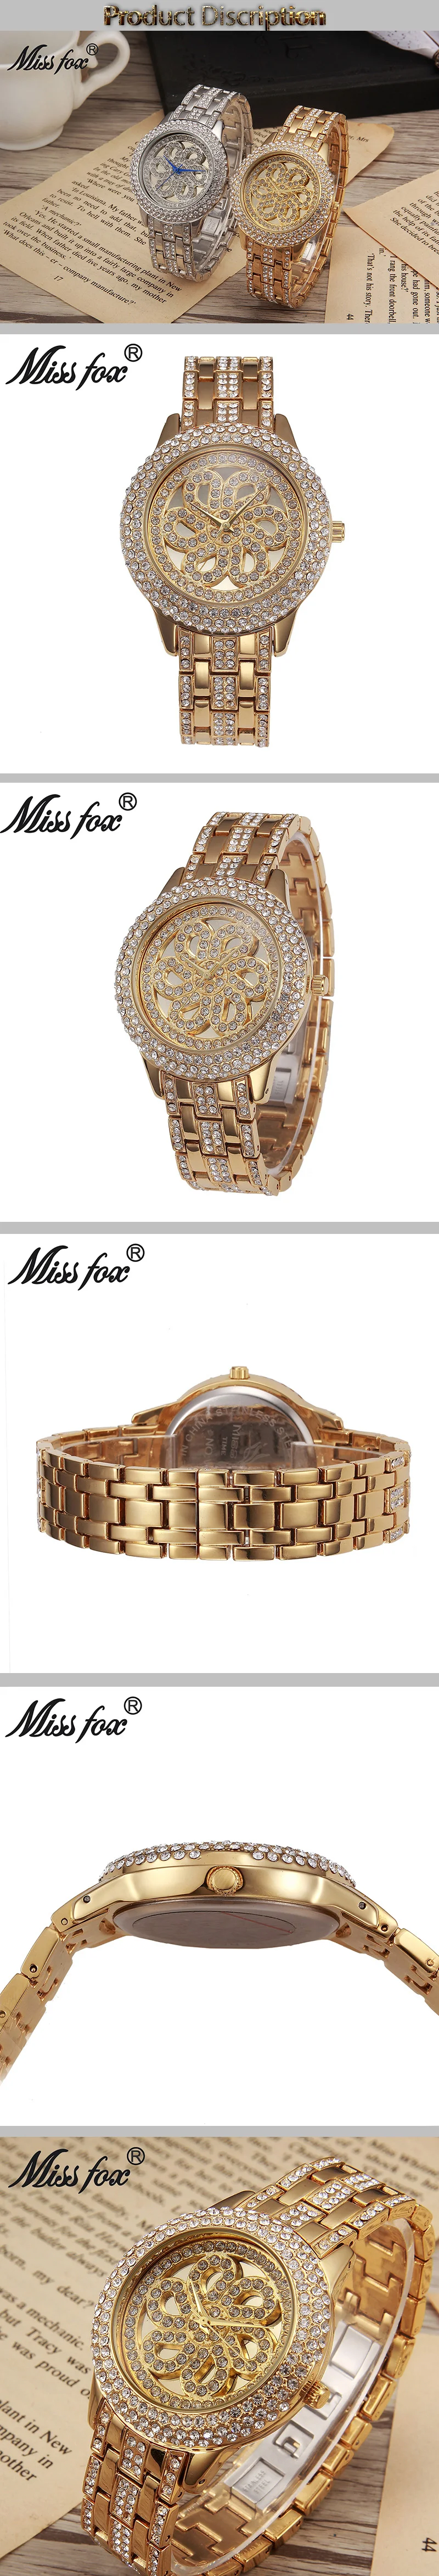 MISSFOX золотые часы женские часы со стразами люксовый бренд хрустальные золотые часы розовые женские часы Xfcs водонепроницаемые противоударные часы